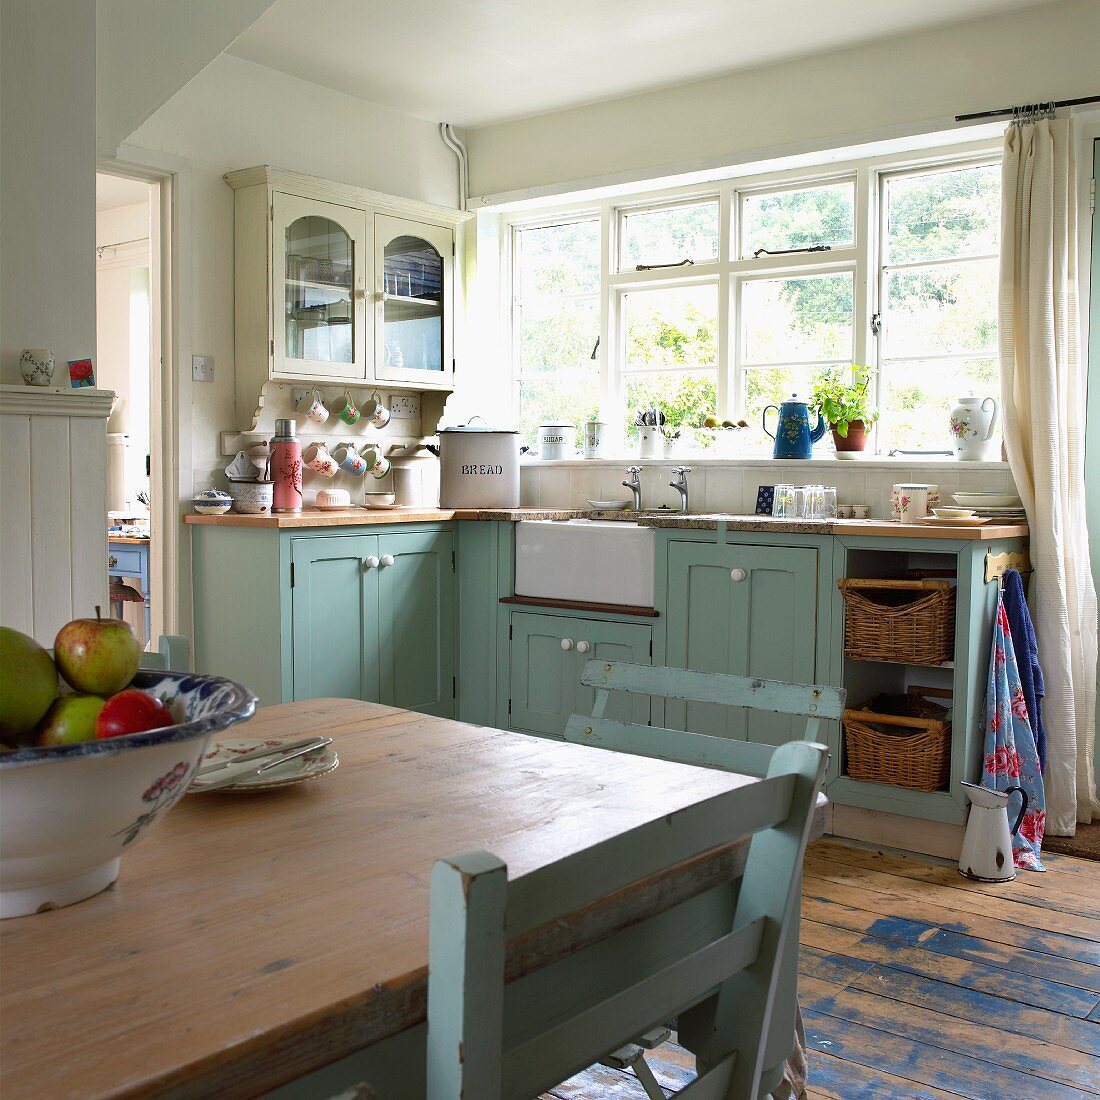 Pastellblaue alte Wohnküche im englischen Landhausstil; Schale mit Äpfeln auf Esstisch im Vordergrund